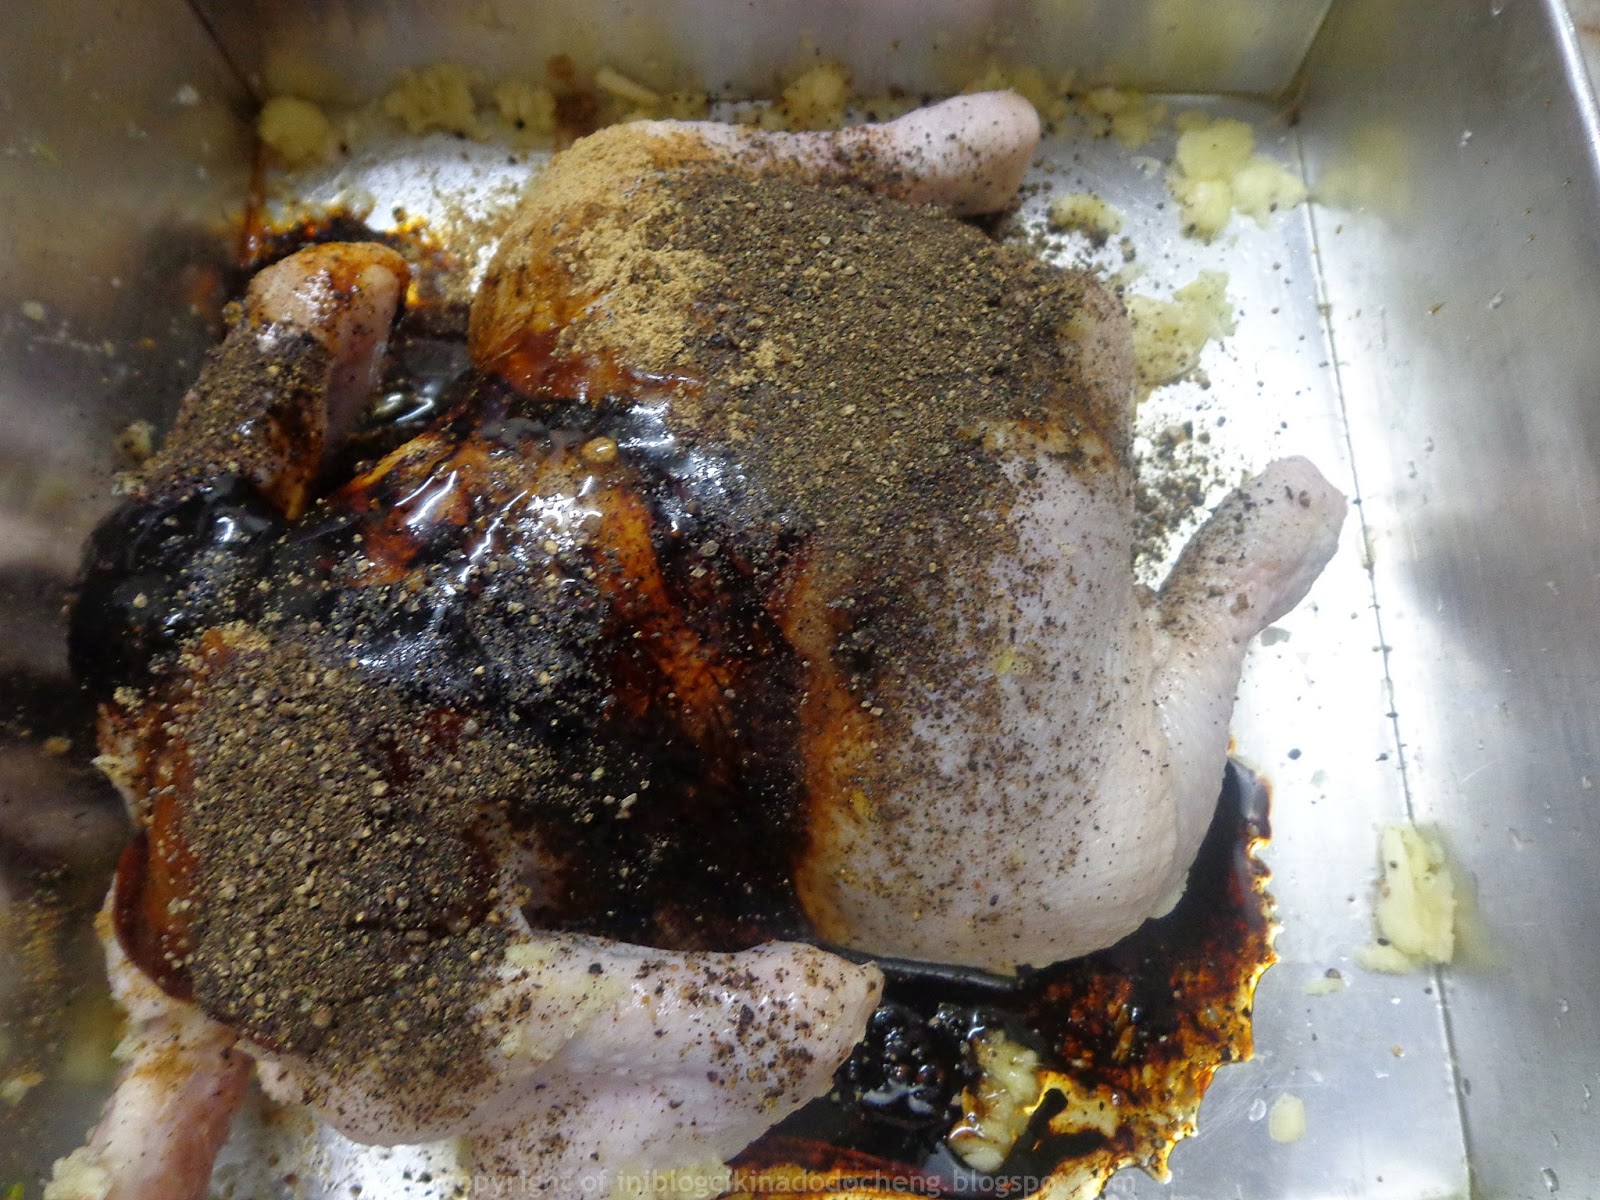 Blog cik ina do do cheng: Ayam panggang black pepper 